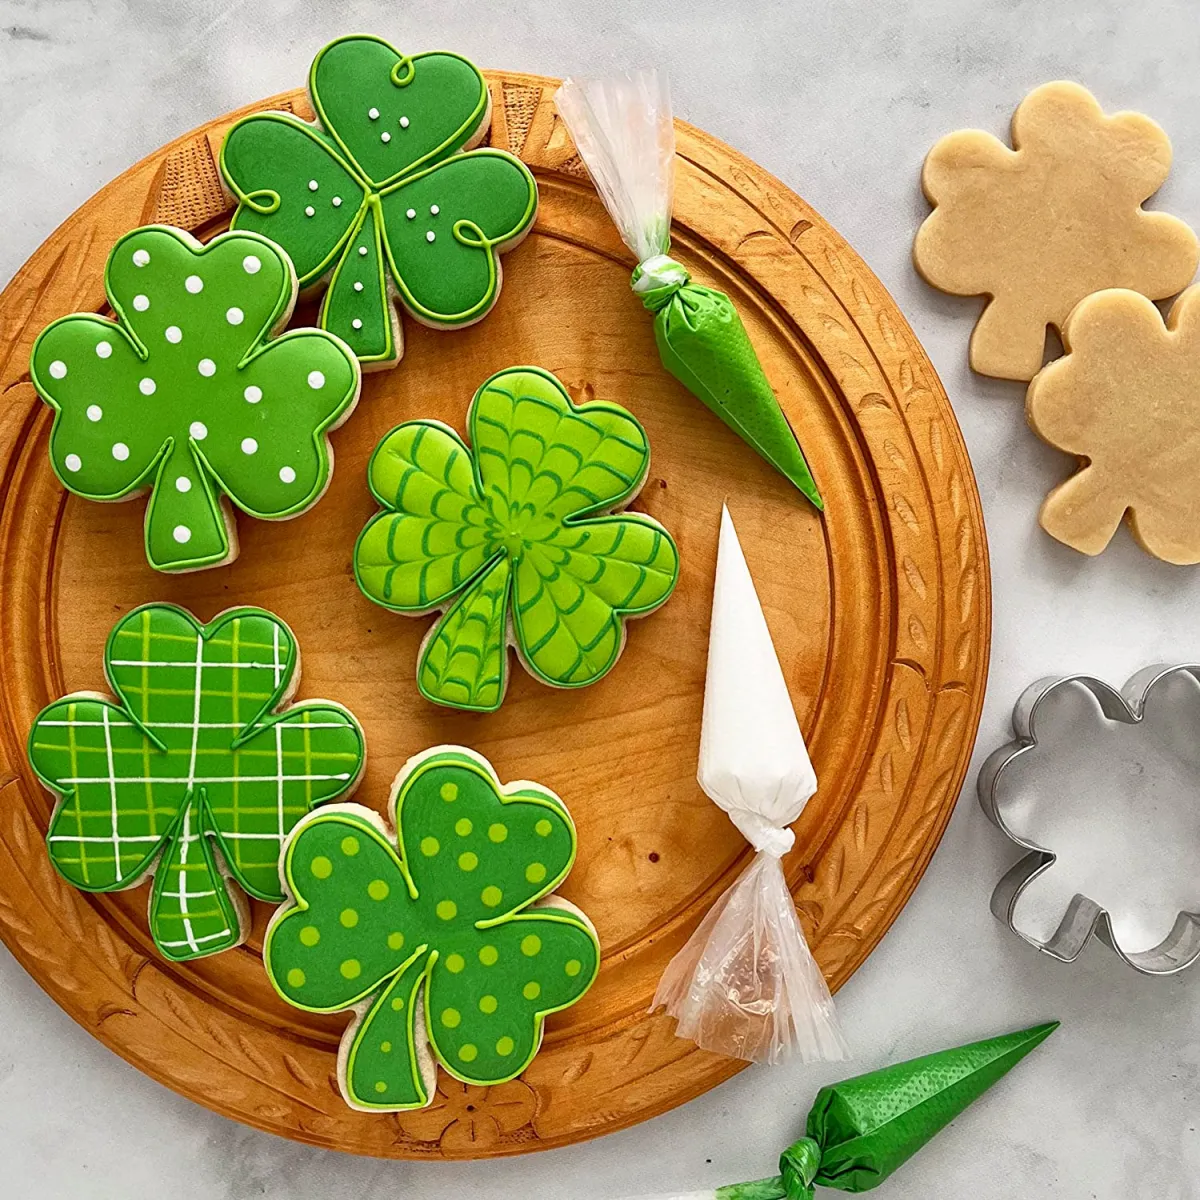 irisches gebäck mit grüner glasur kleeblatt kekse